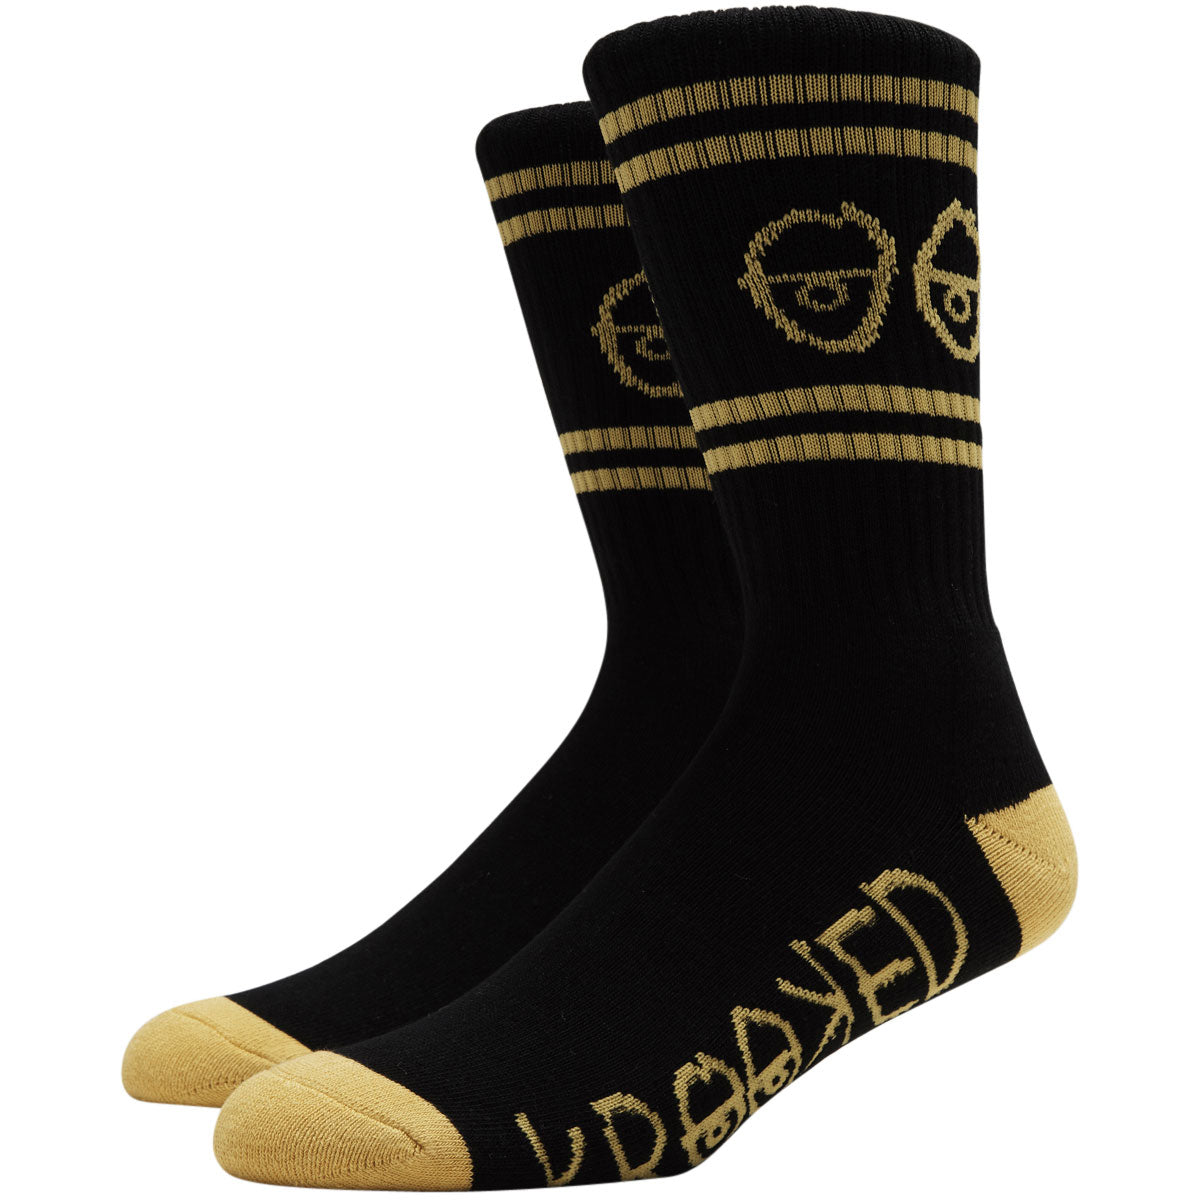 Krooked Eyes Socks - Black/Yellow image 1